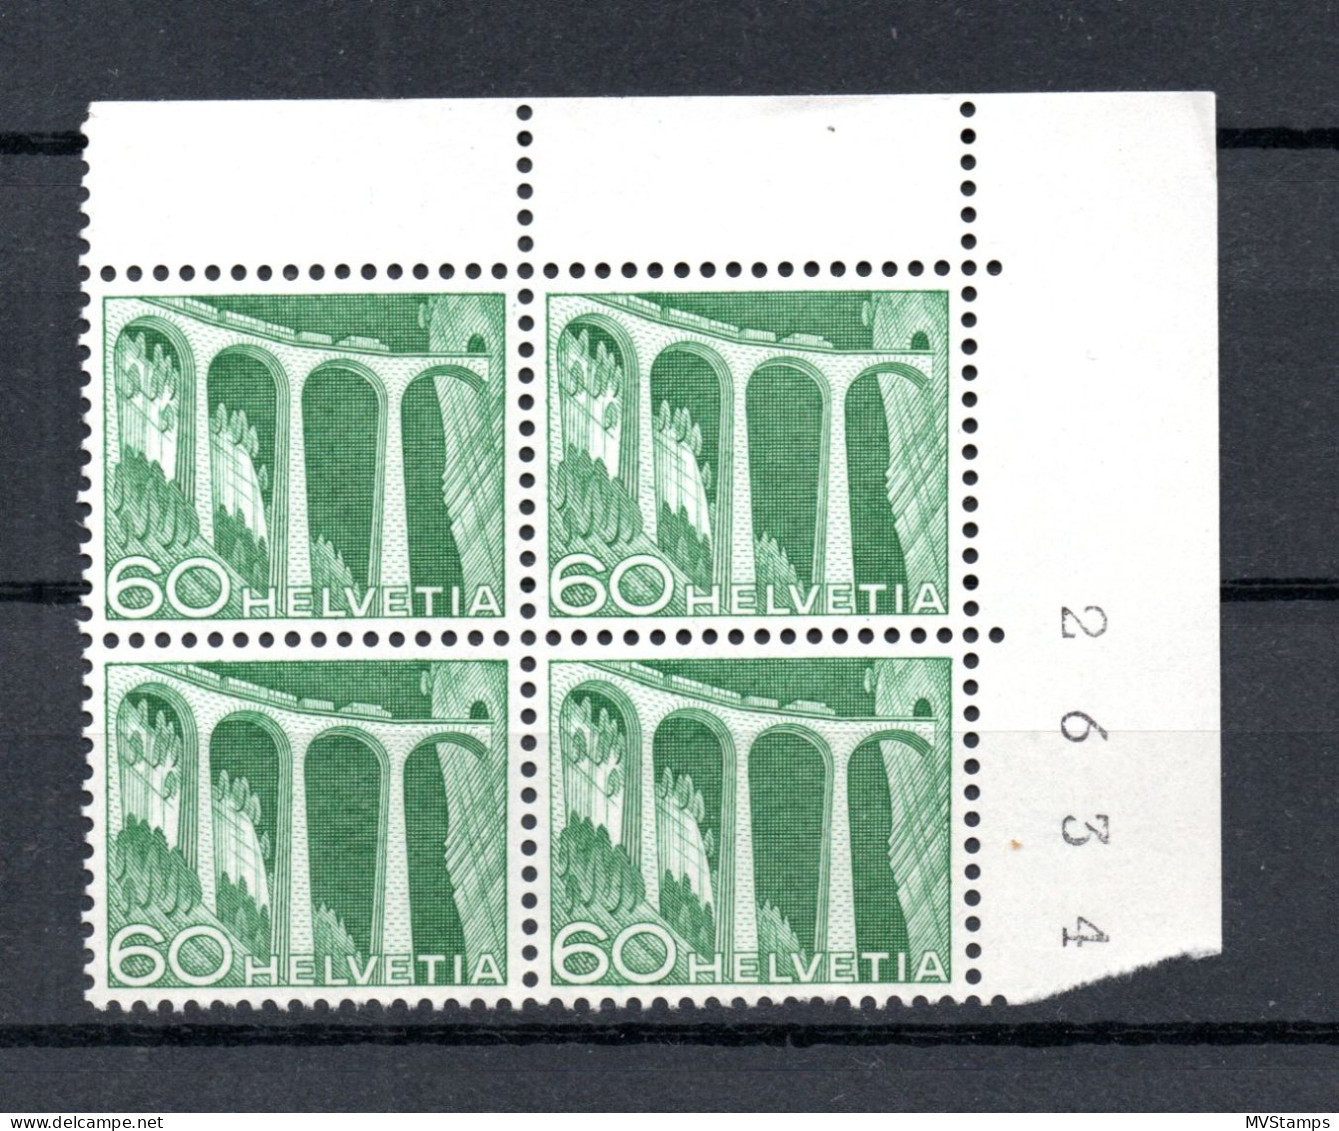 Schweiz 1949 Freimarke 539 In UER Viererblocke Postfrisch - Nuovi